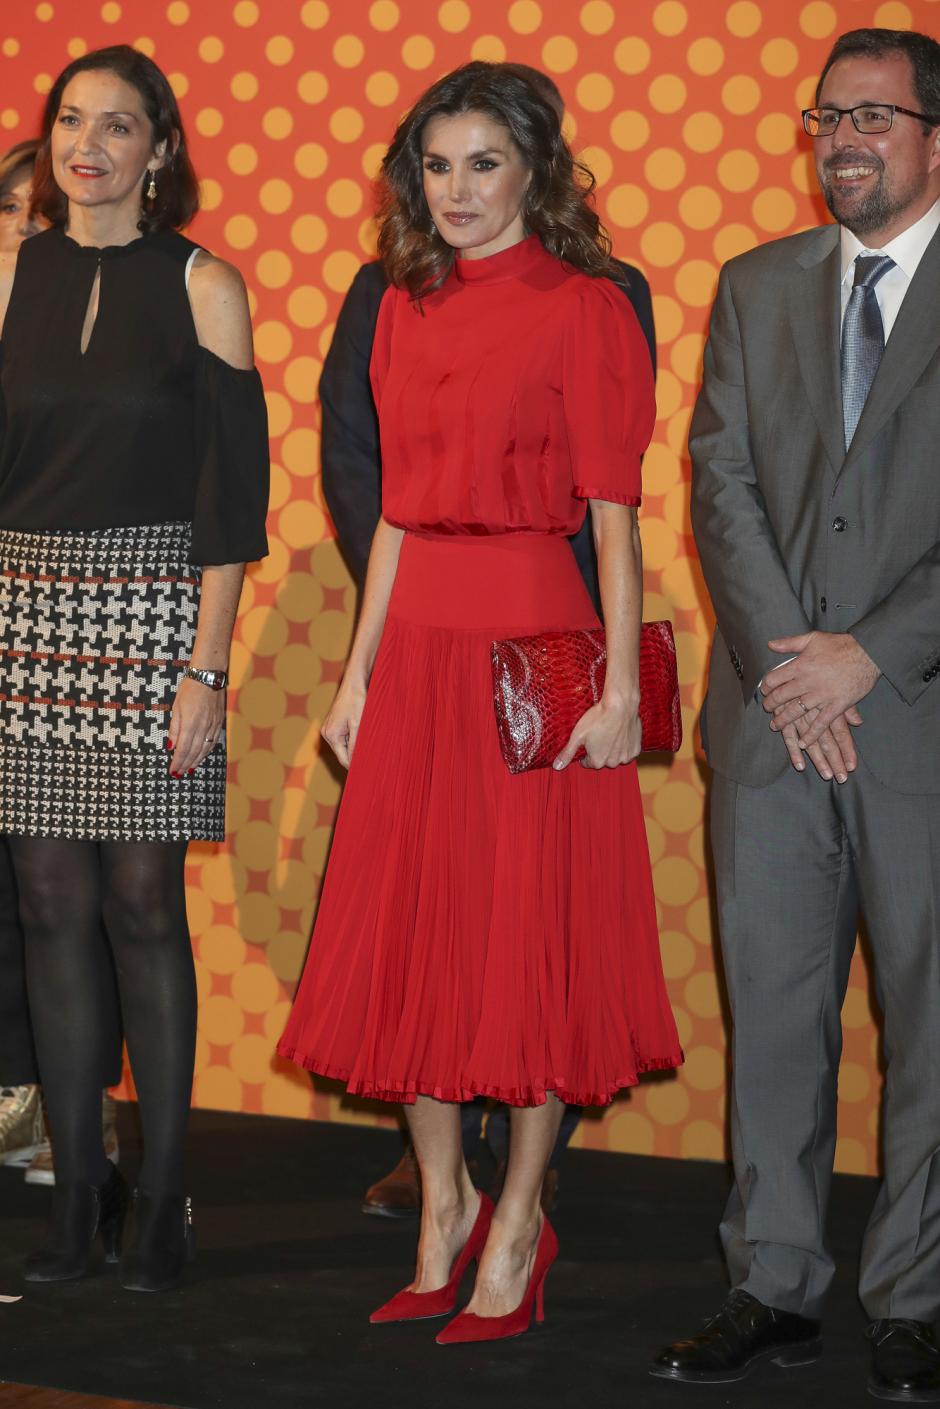 Spanish Queen Letizia Ortiz during 5 edition of “ Nacionales de la Industria de la Moda “ Awards in Madrid on Wednesday , 19 December 2018